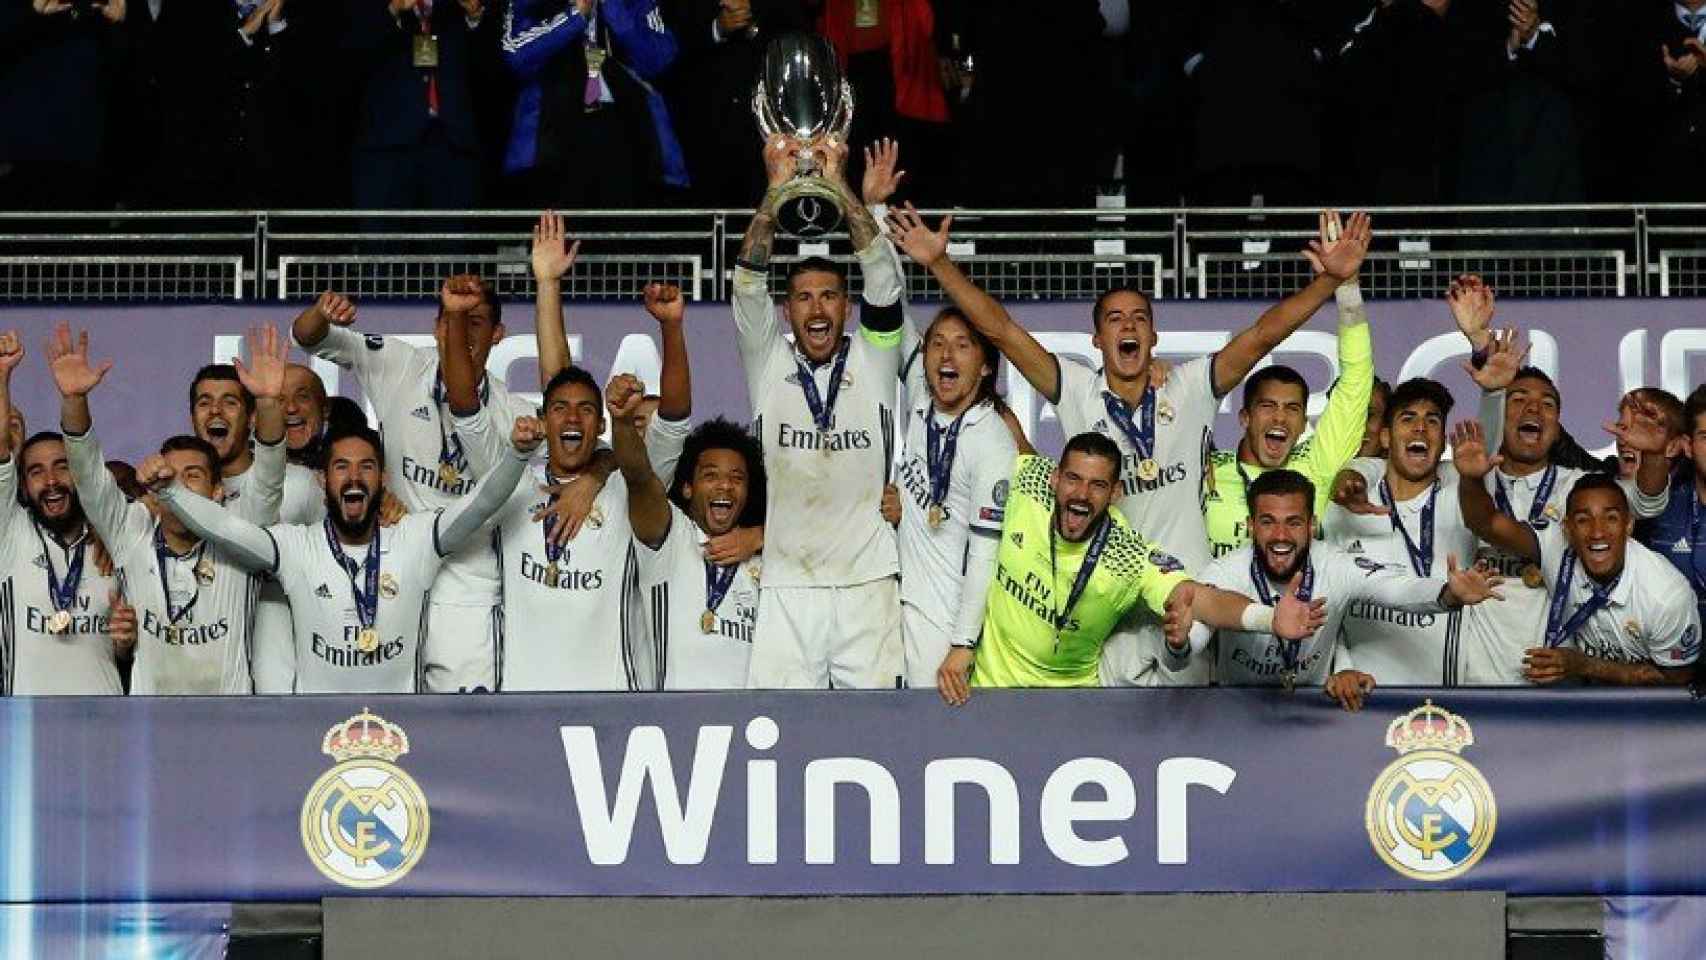 El Madrid levantando la Supercopa de Europa